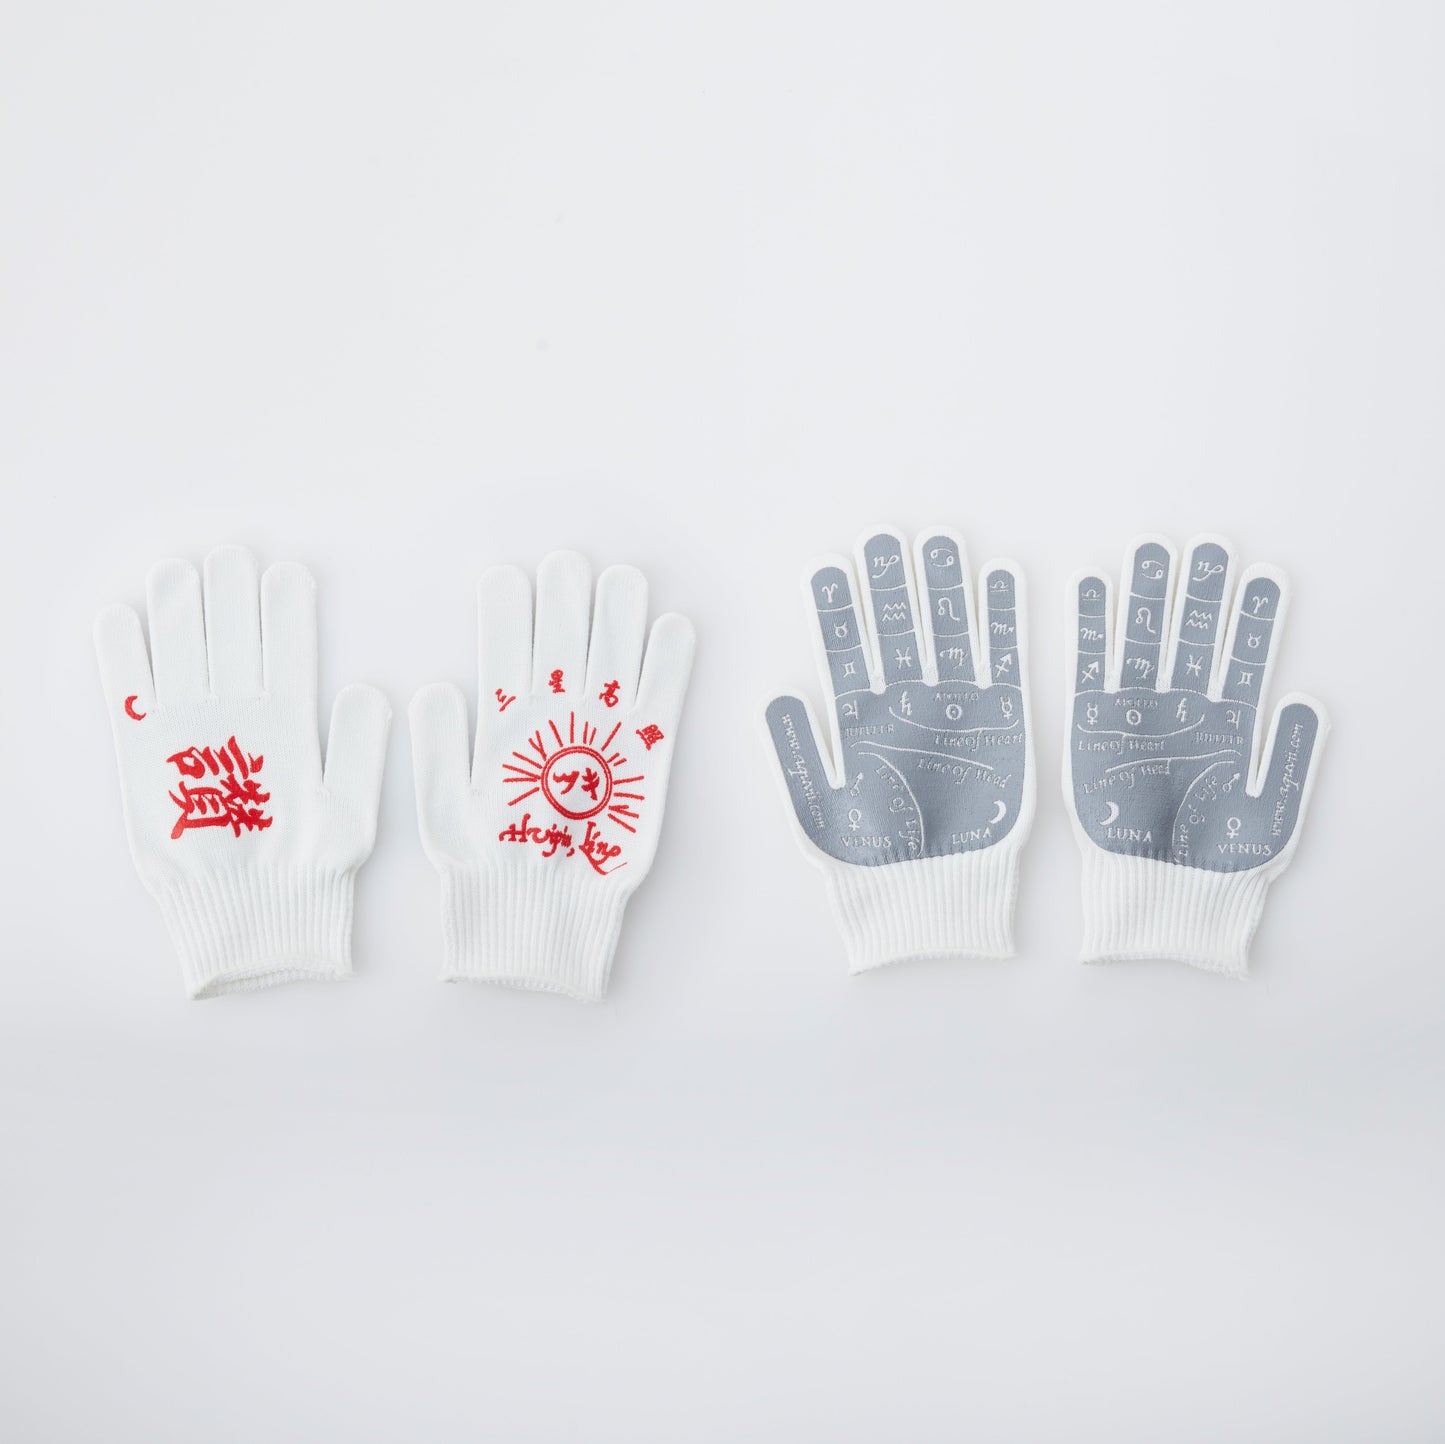 Hui hand glove